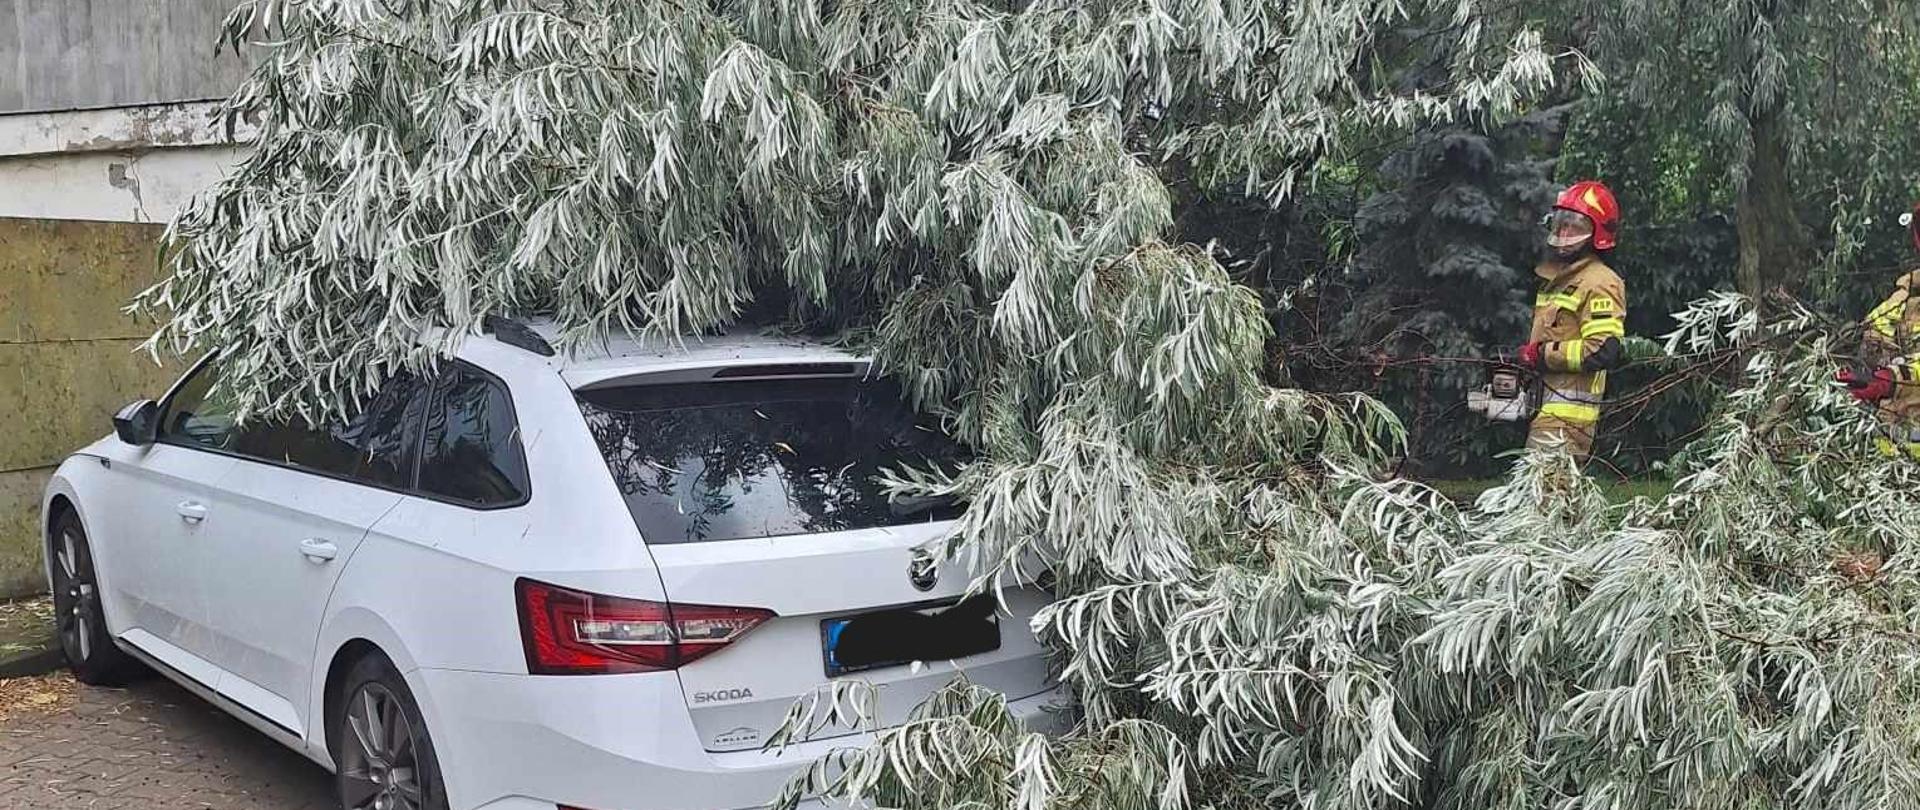 Zdjęcie przedstawia powalone drzewo, które leży na samochodzie koloru białego.